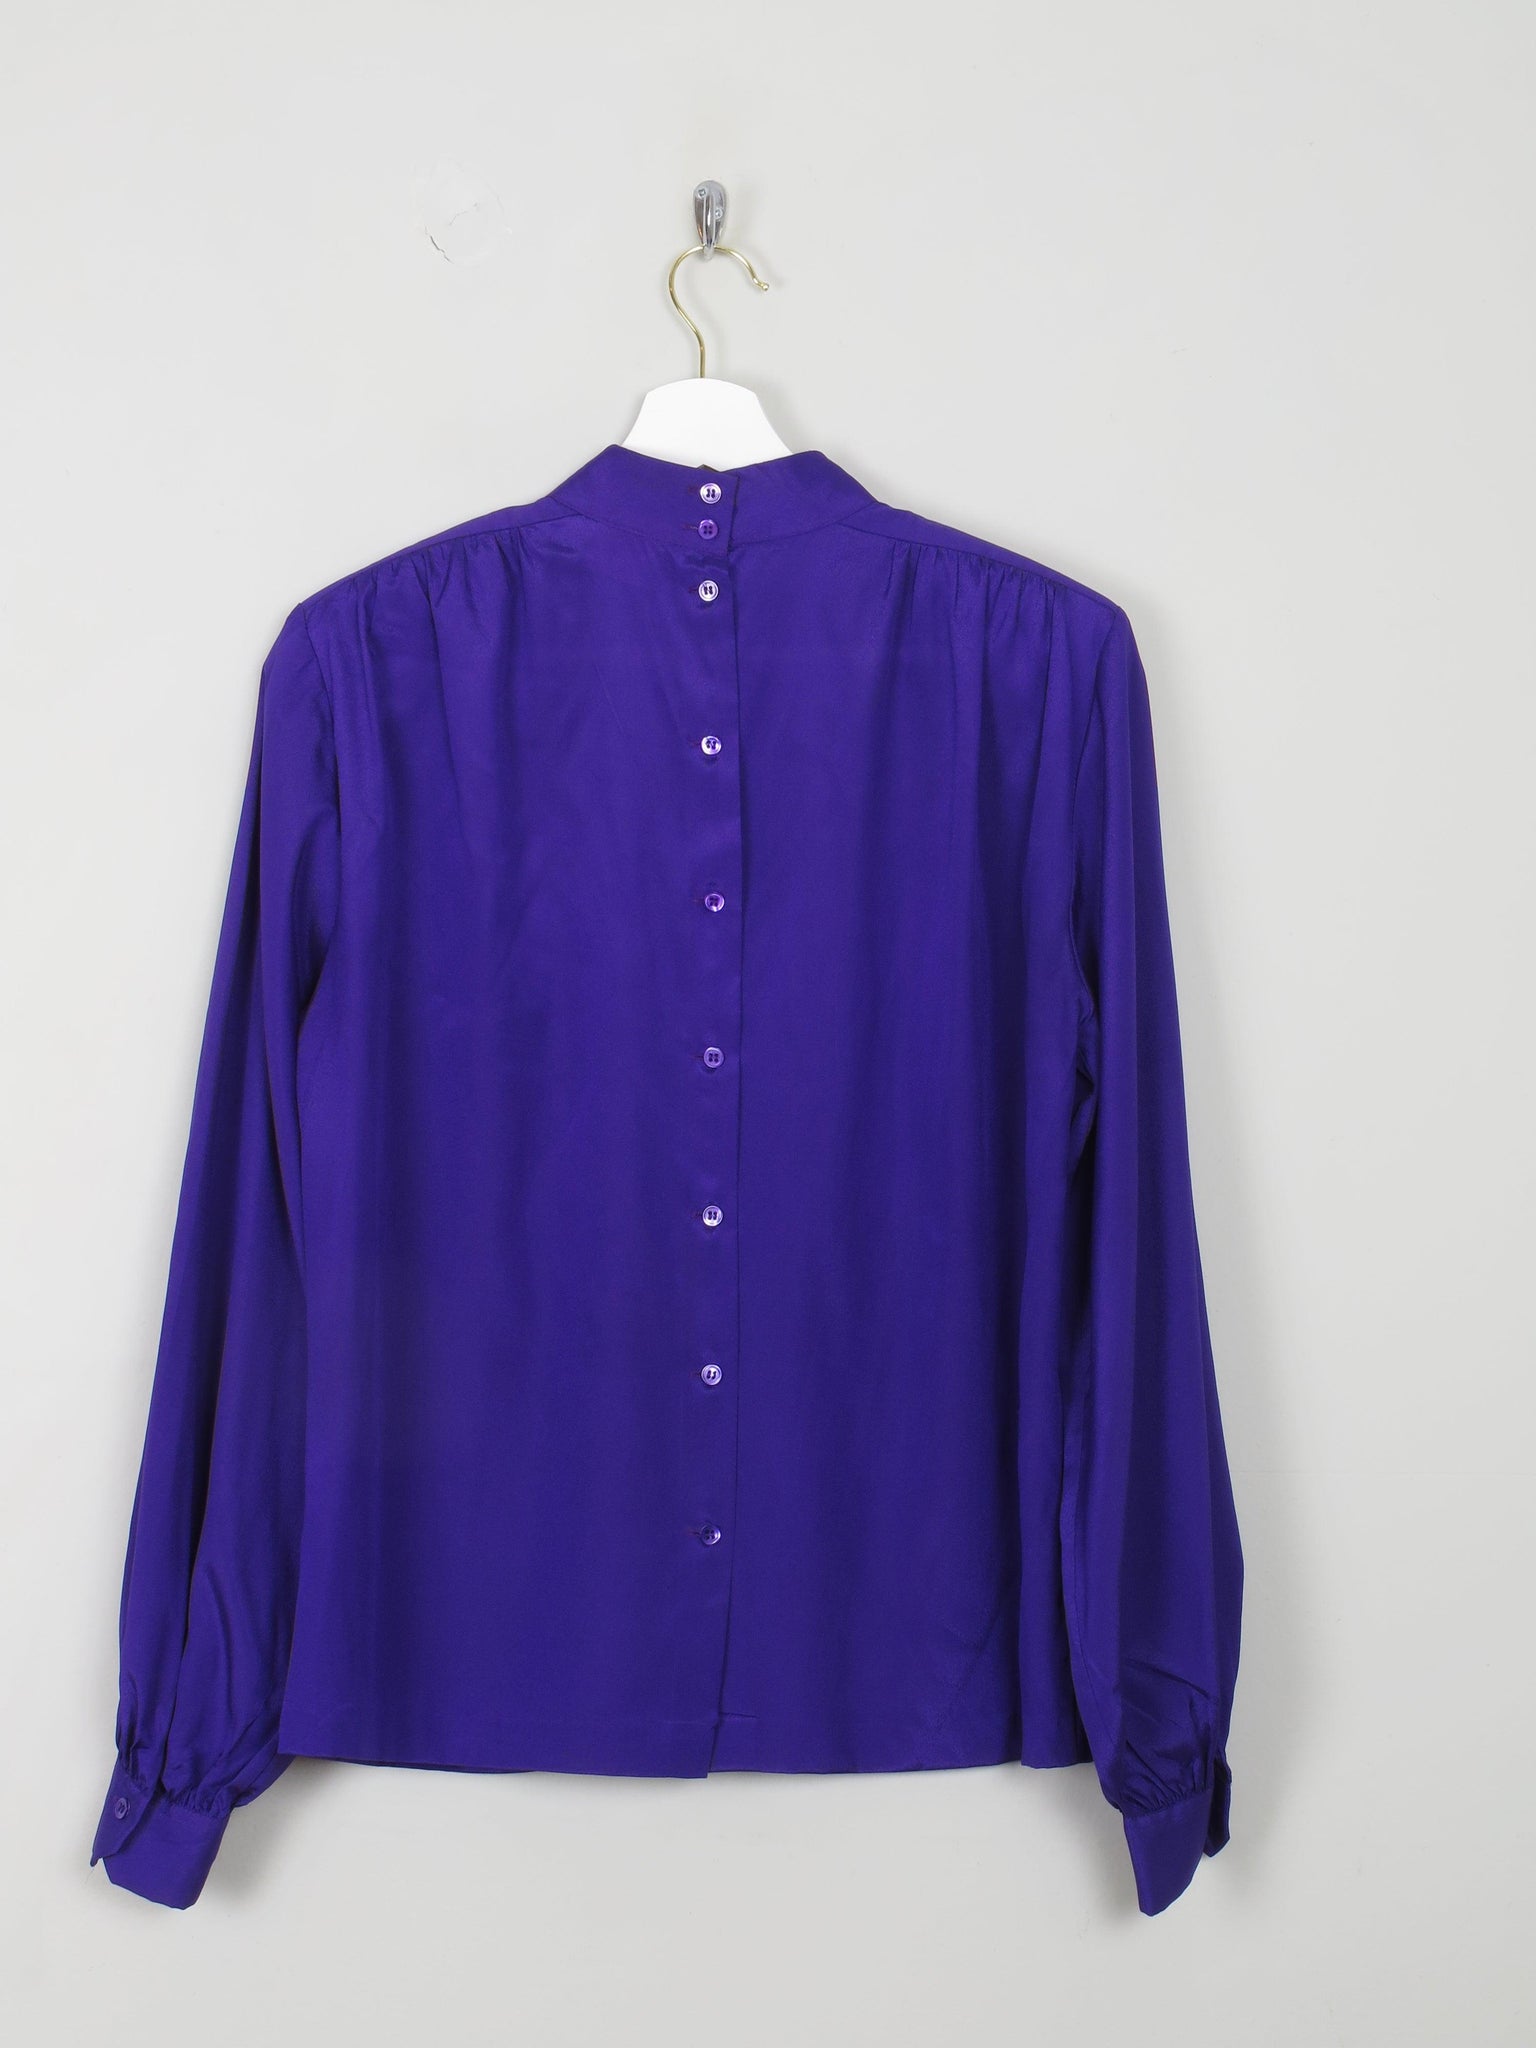 Vintage Purple Liz Claiborne Blouse High Neck S/M - The Harlequin